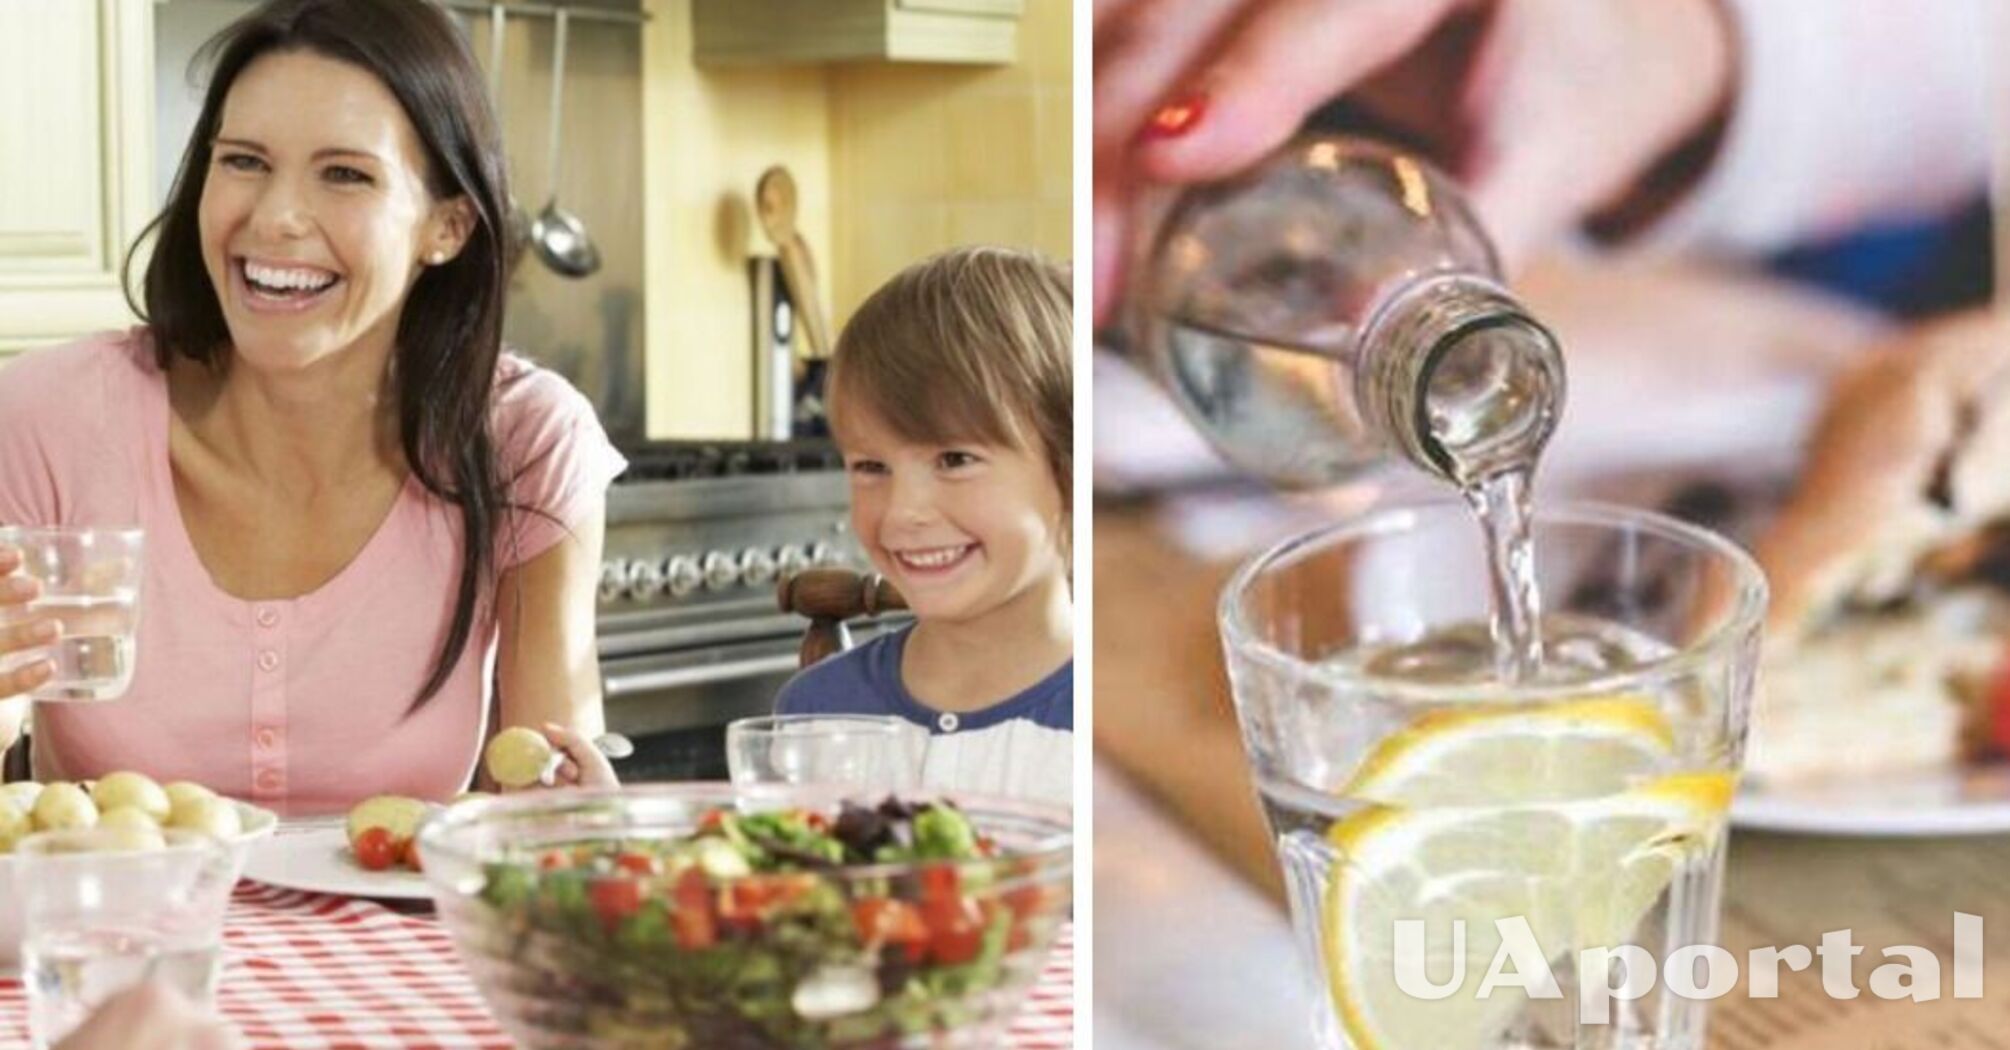 Правда ли, что пить воду во время еды вредно?